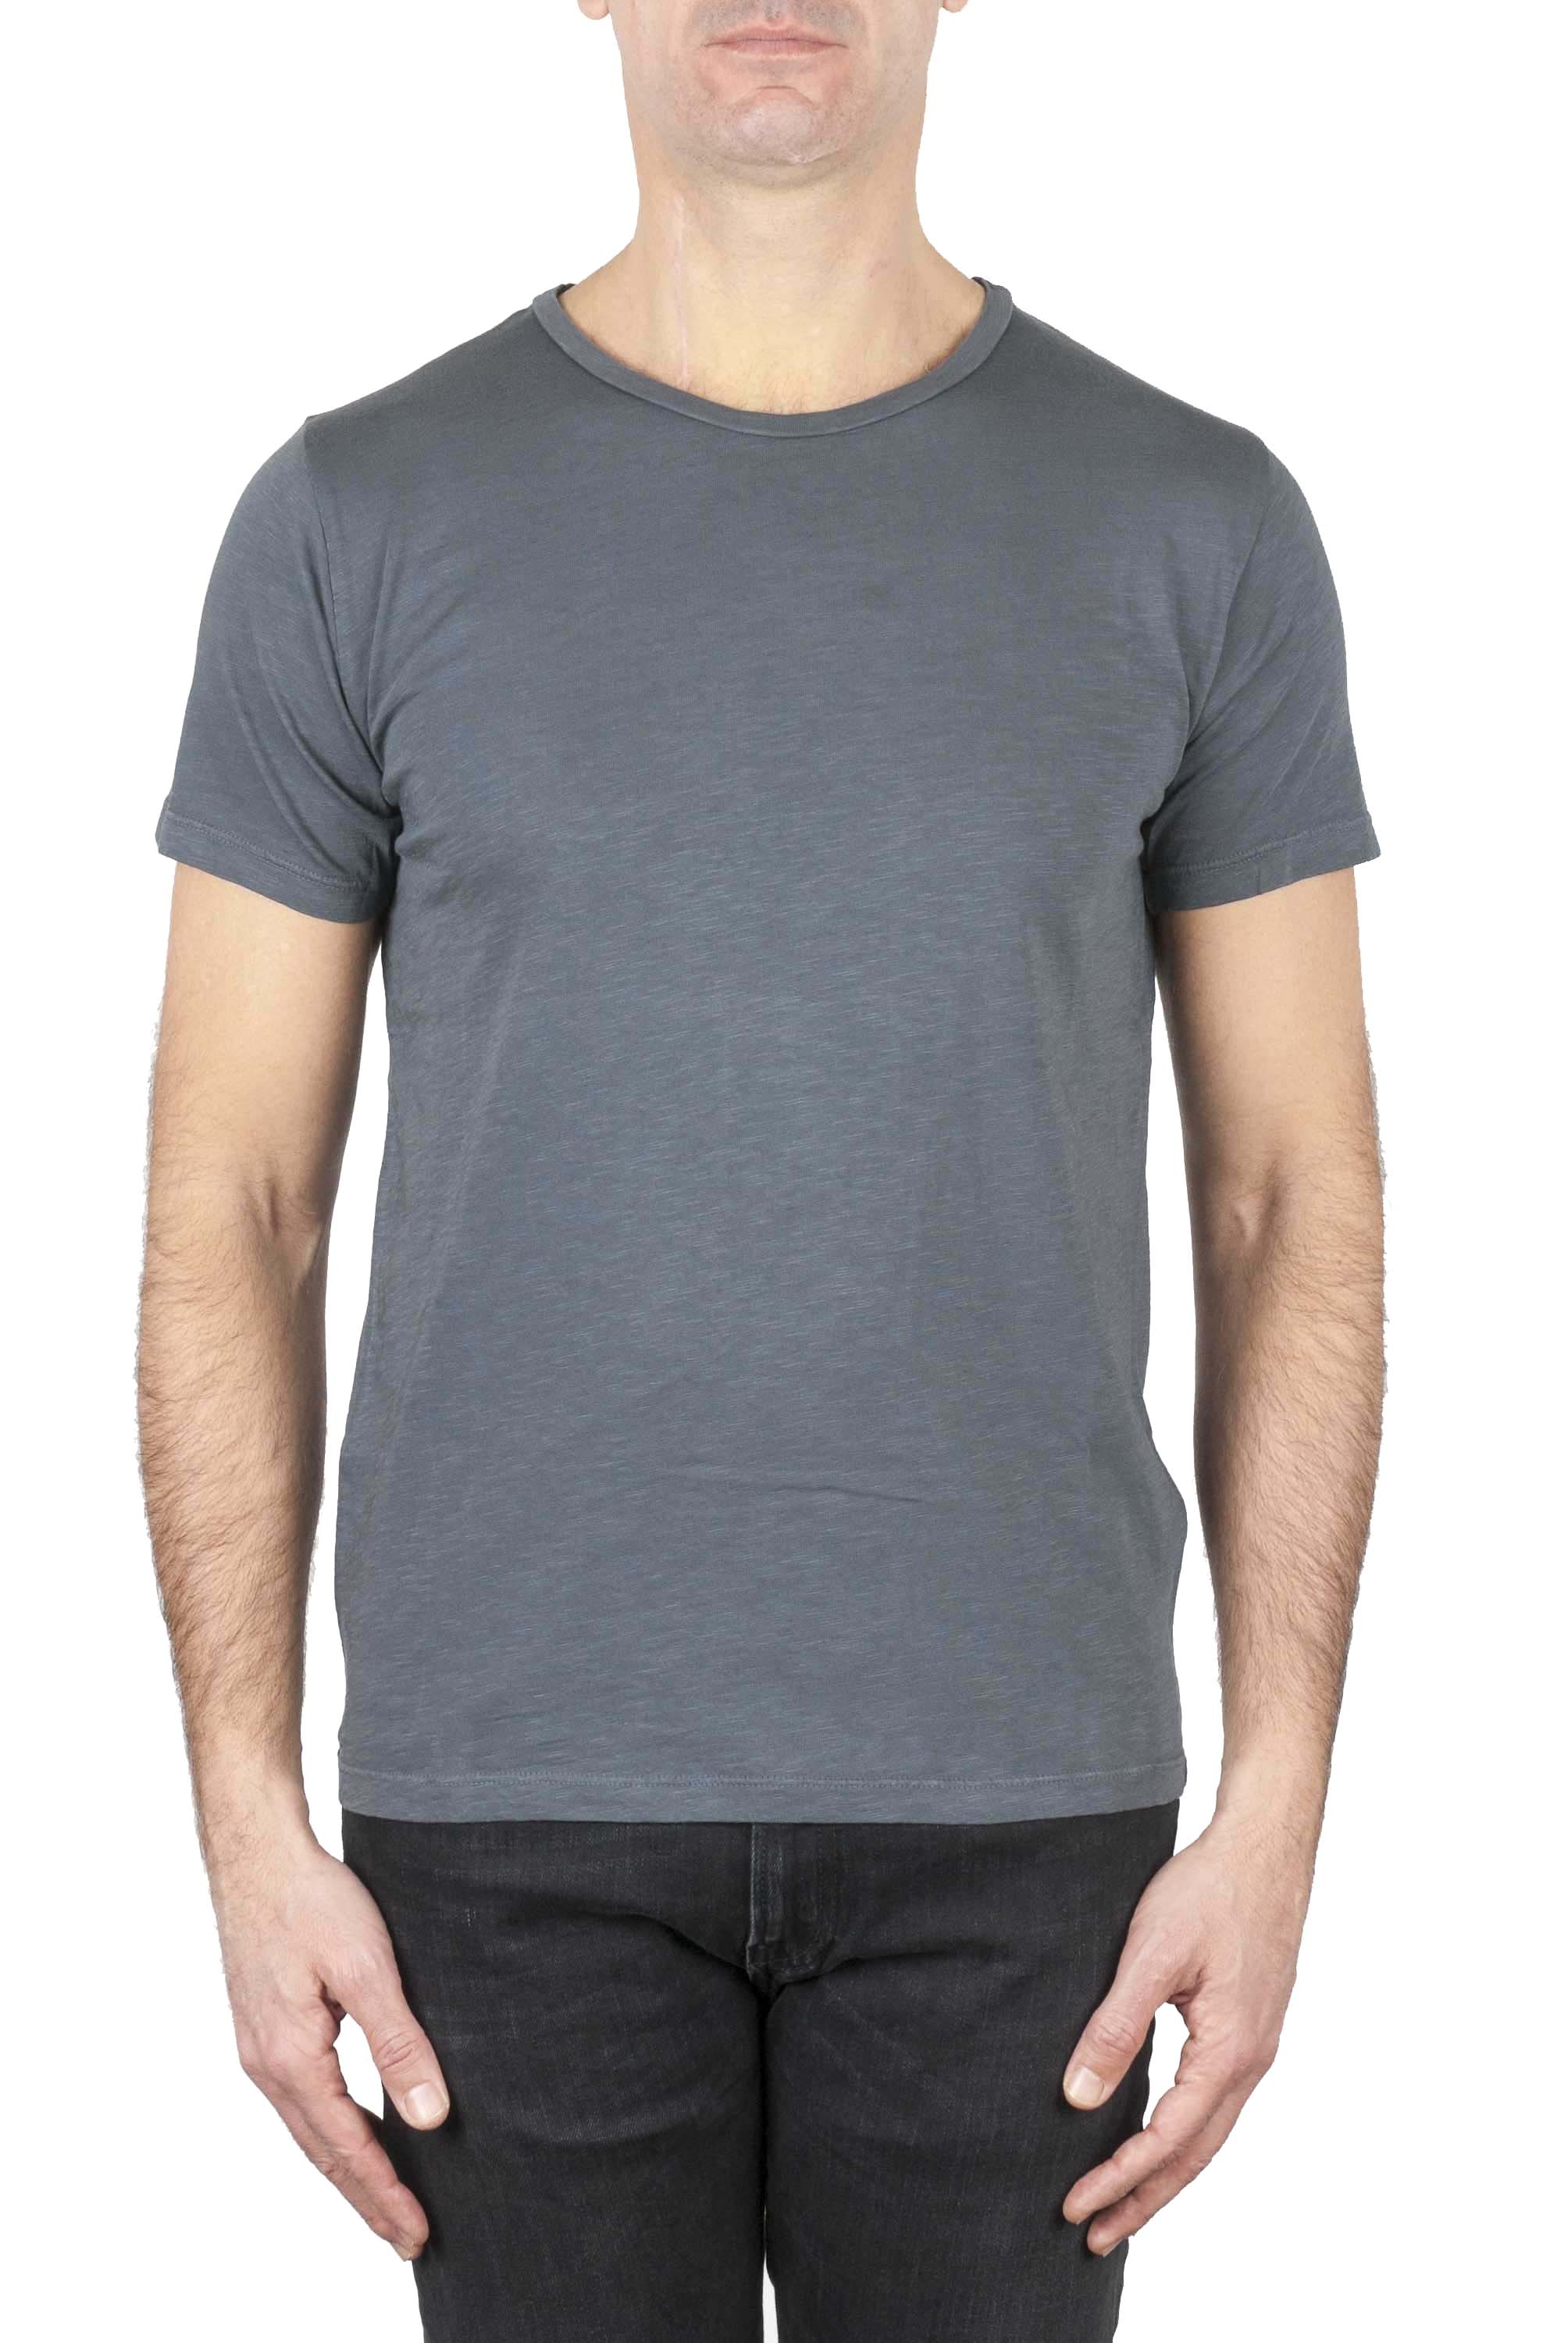 SBU 01641_19AW Camiseta de algodón con cuello redondo en color gris oscuro 01